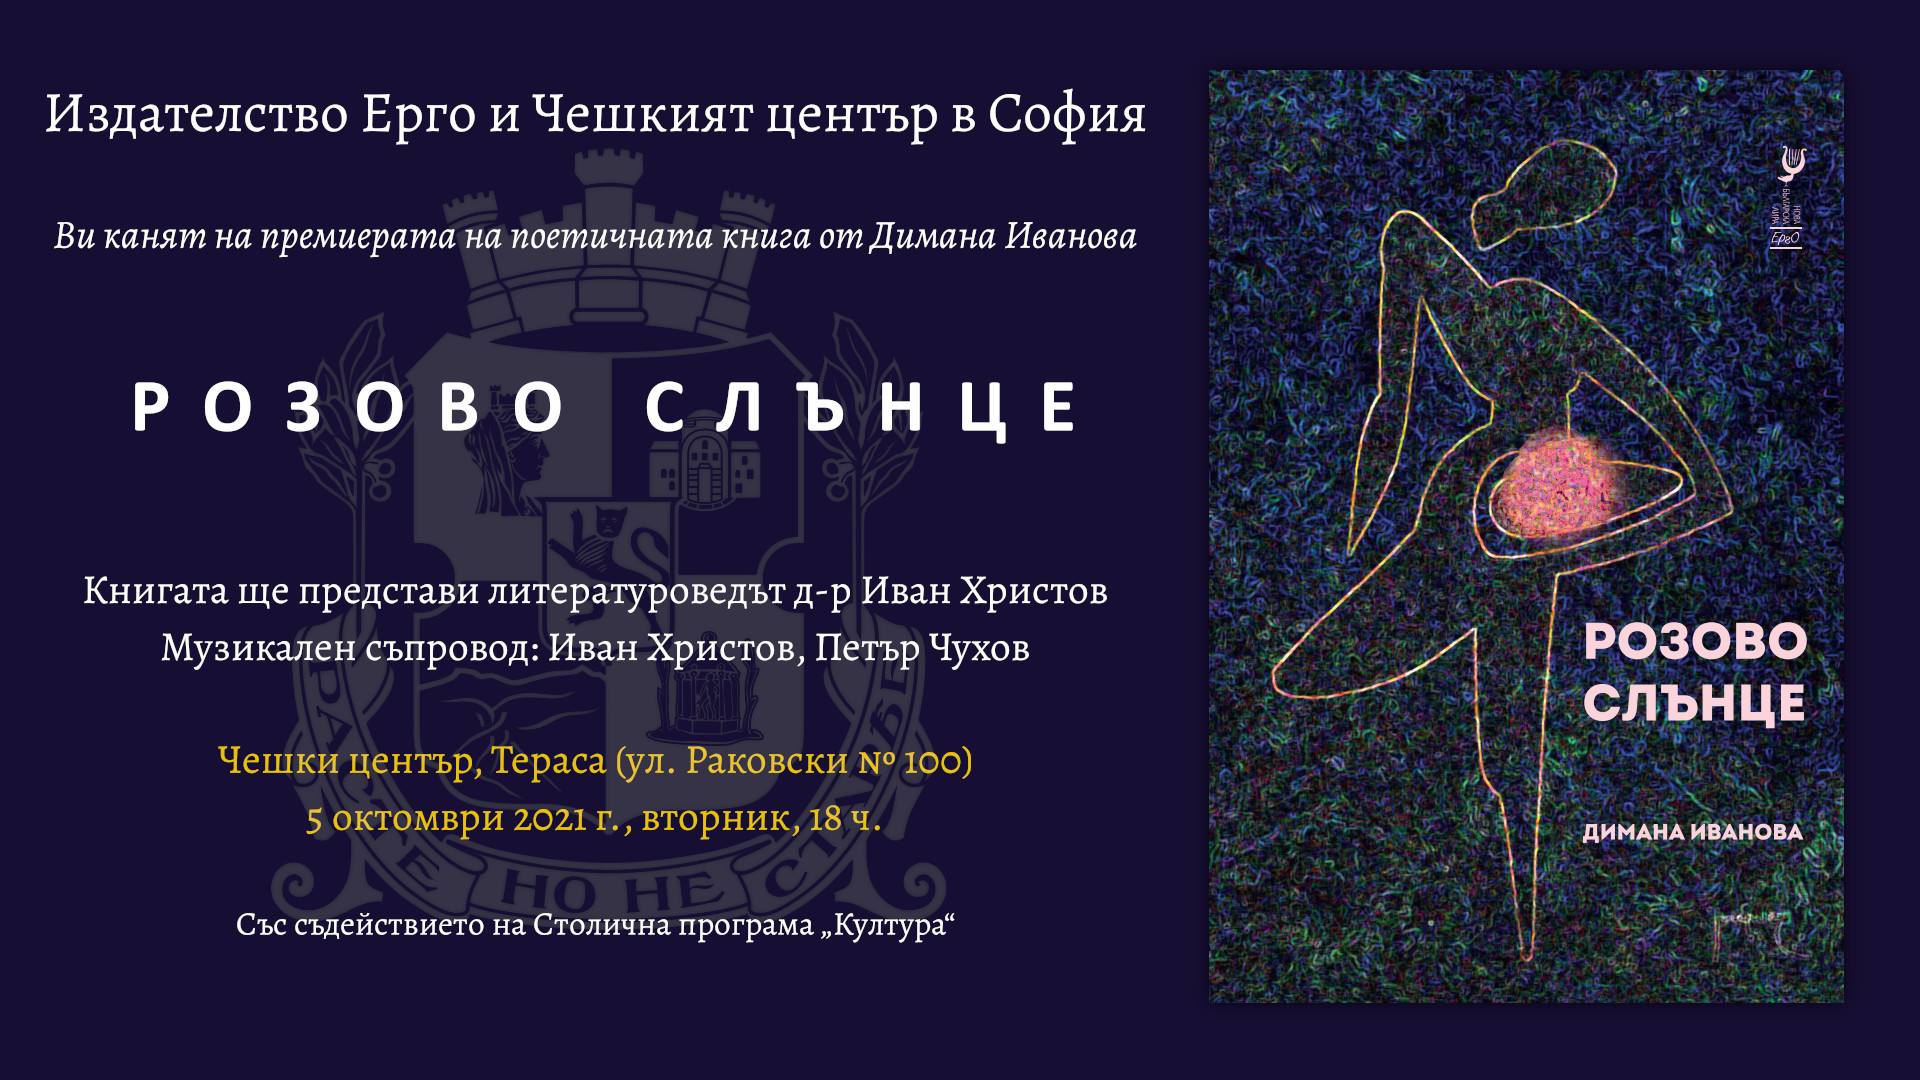 Премиера на поетичната книга "Розово слънце" от Димана Иванова